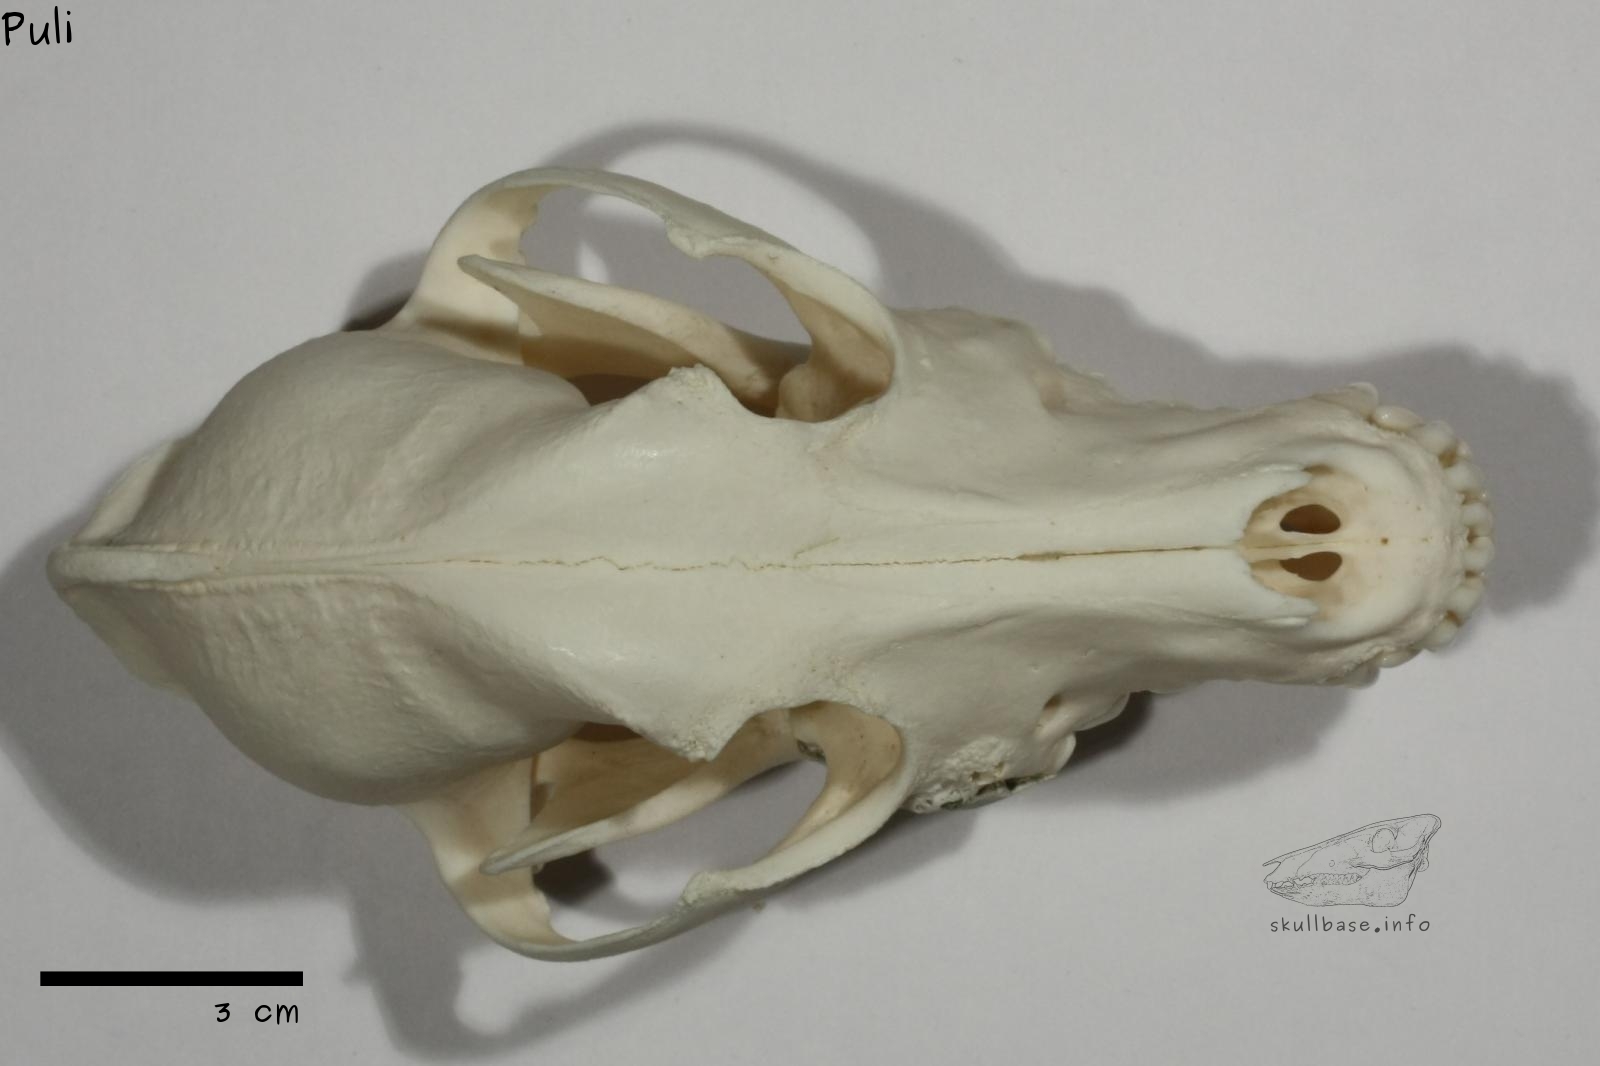 Puli (Canis lupus familiaris) skull dorsal view